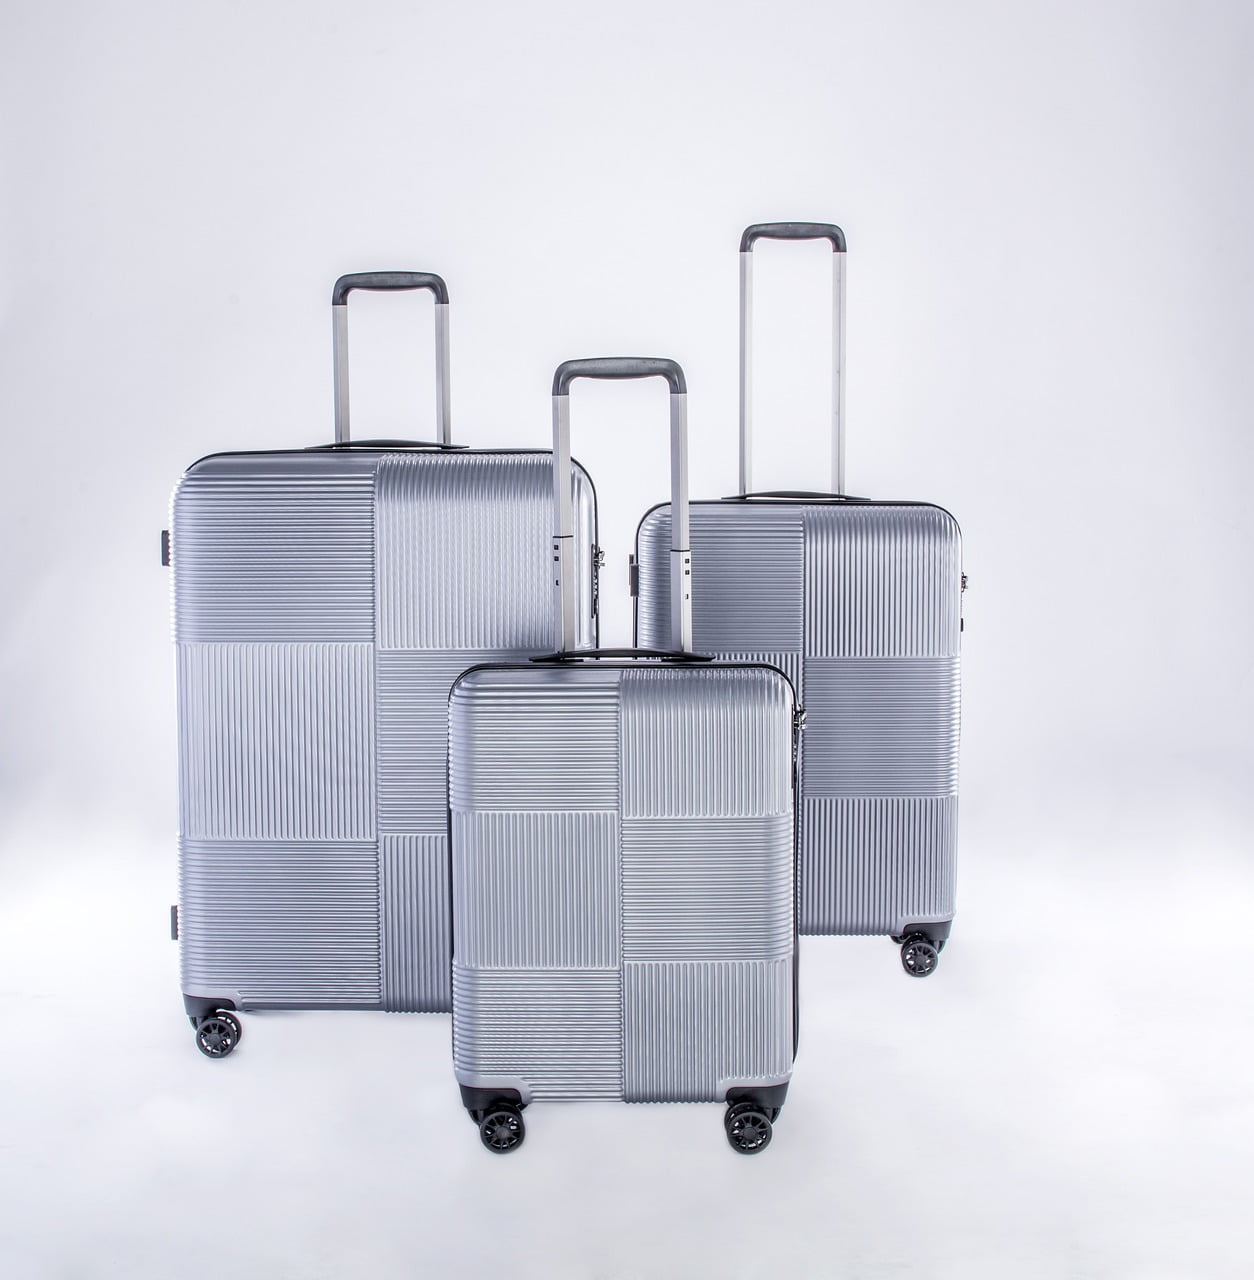 Jaki rozmiar walizki wybrać?